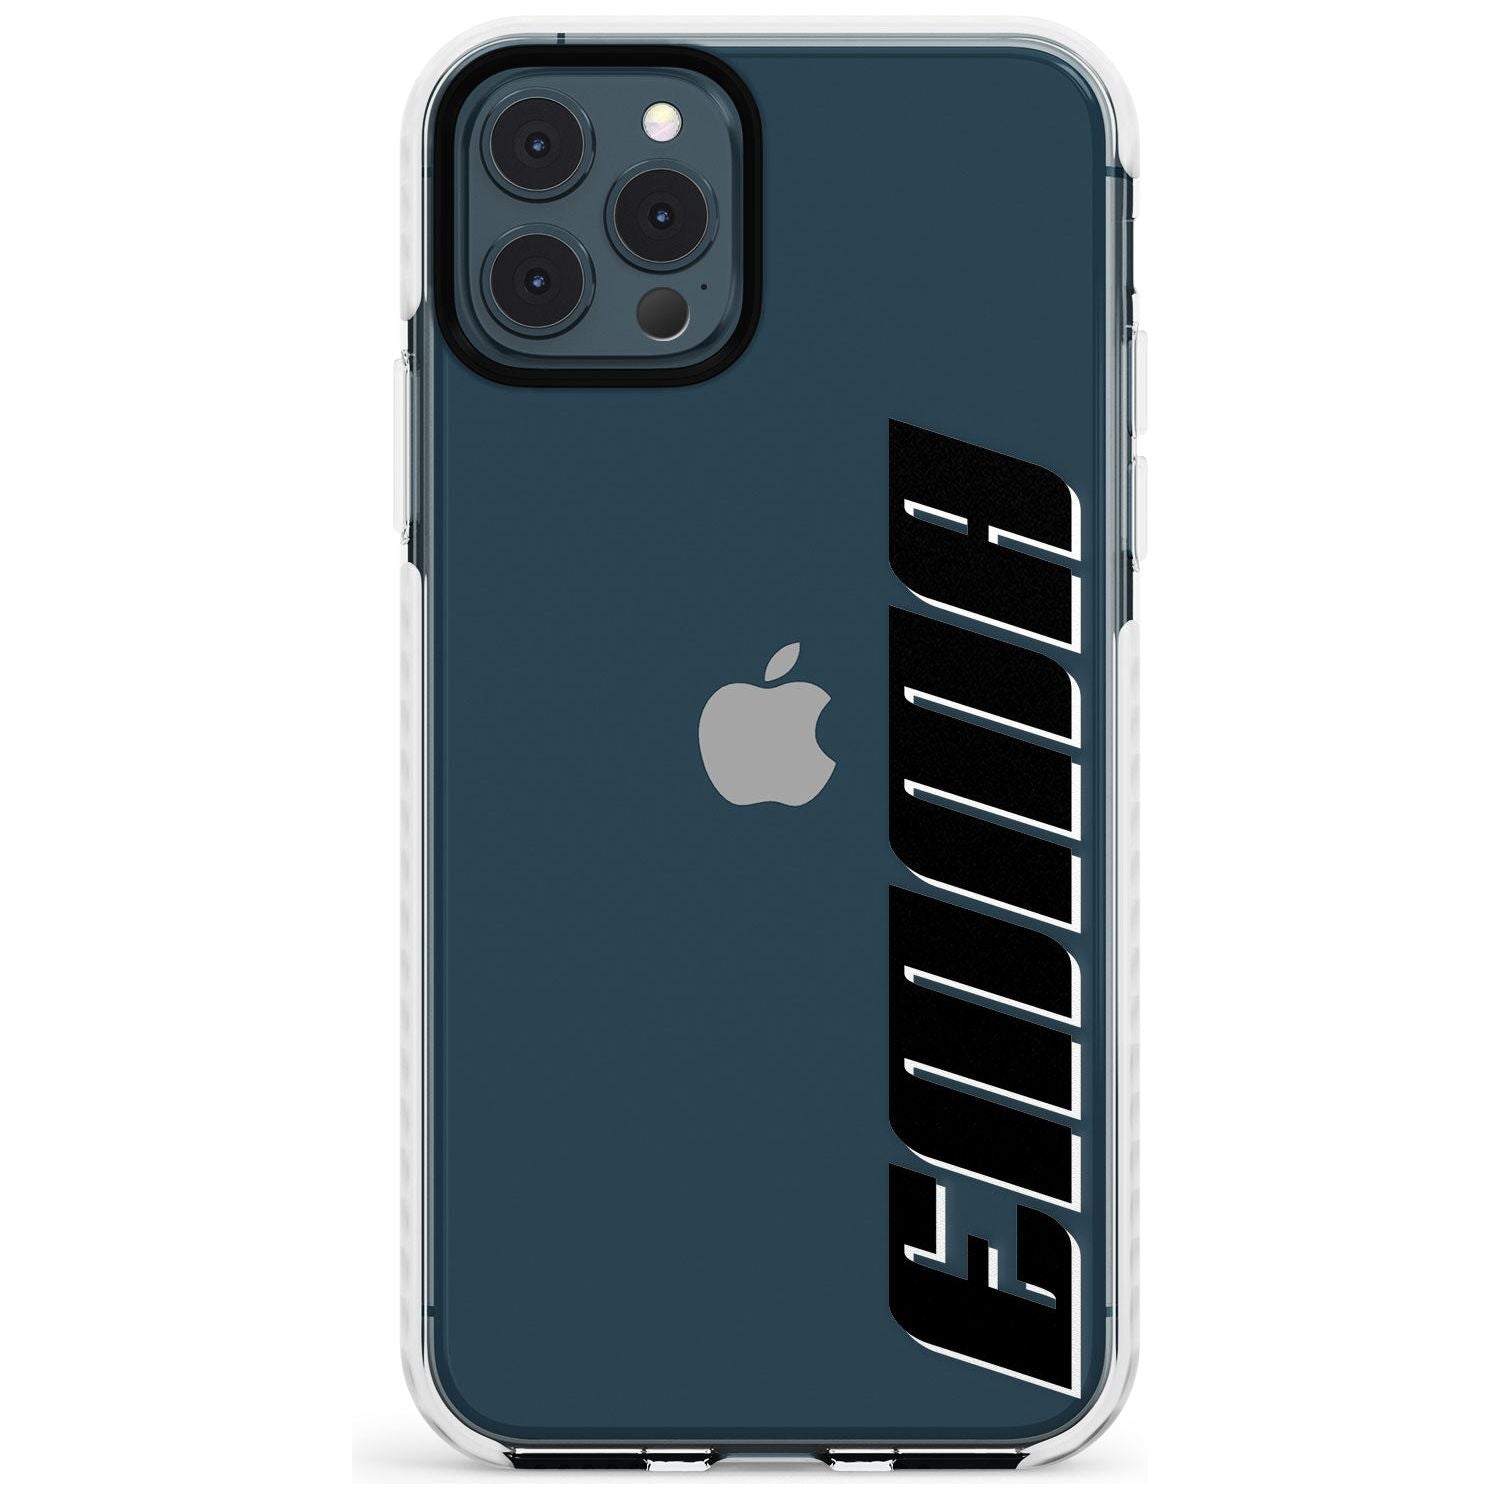 Custom Iphone Case 4A Slim TPU Phone Case for iPhone 11 Pro Max